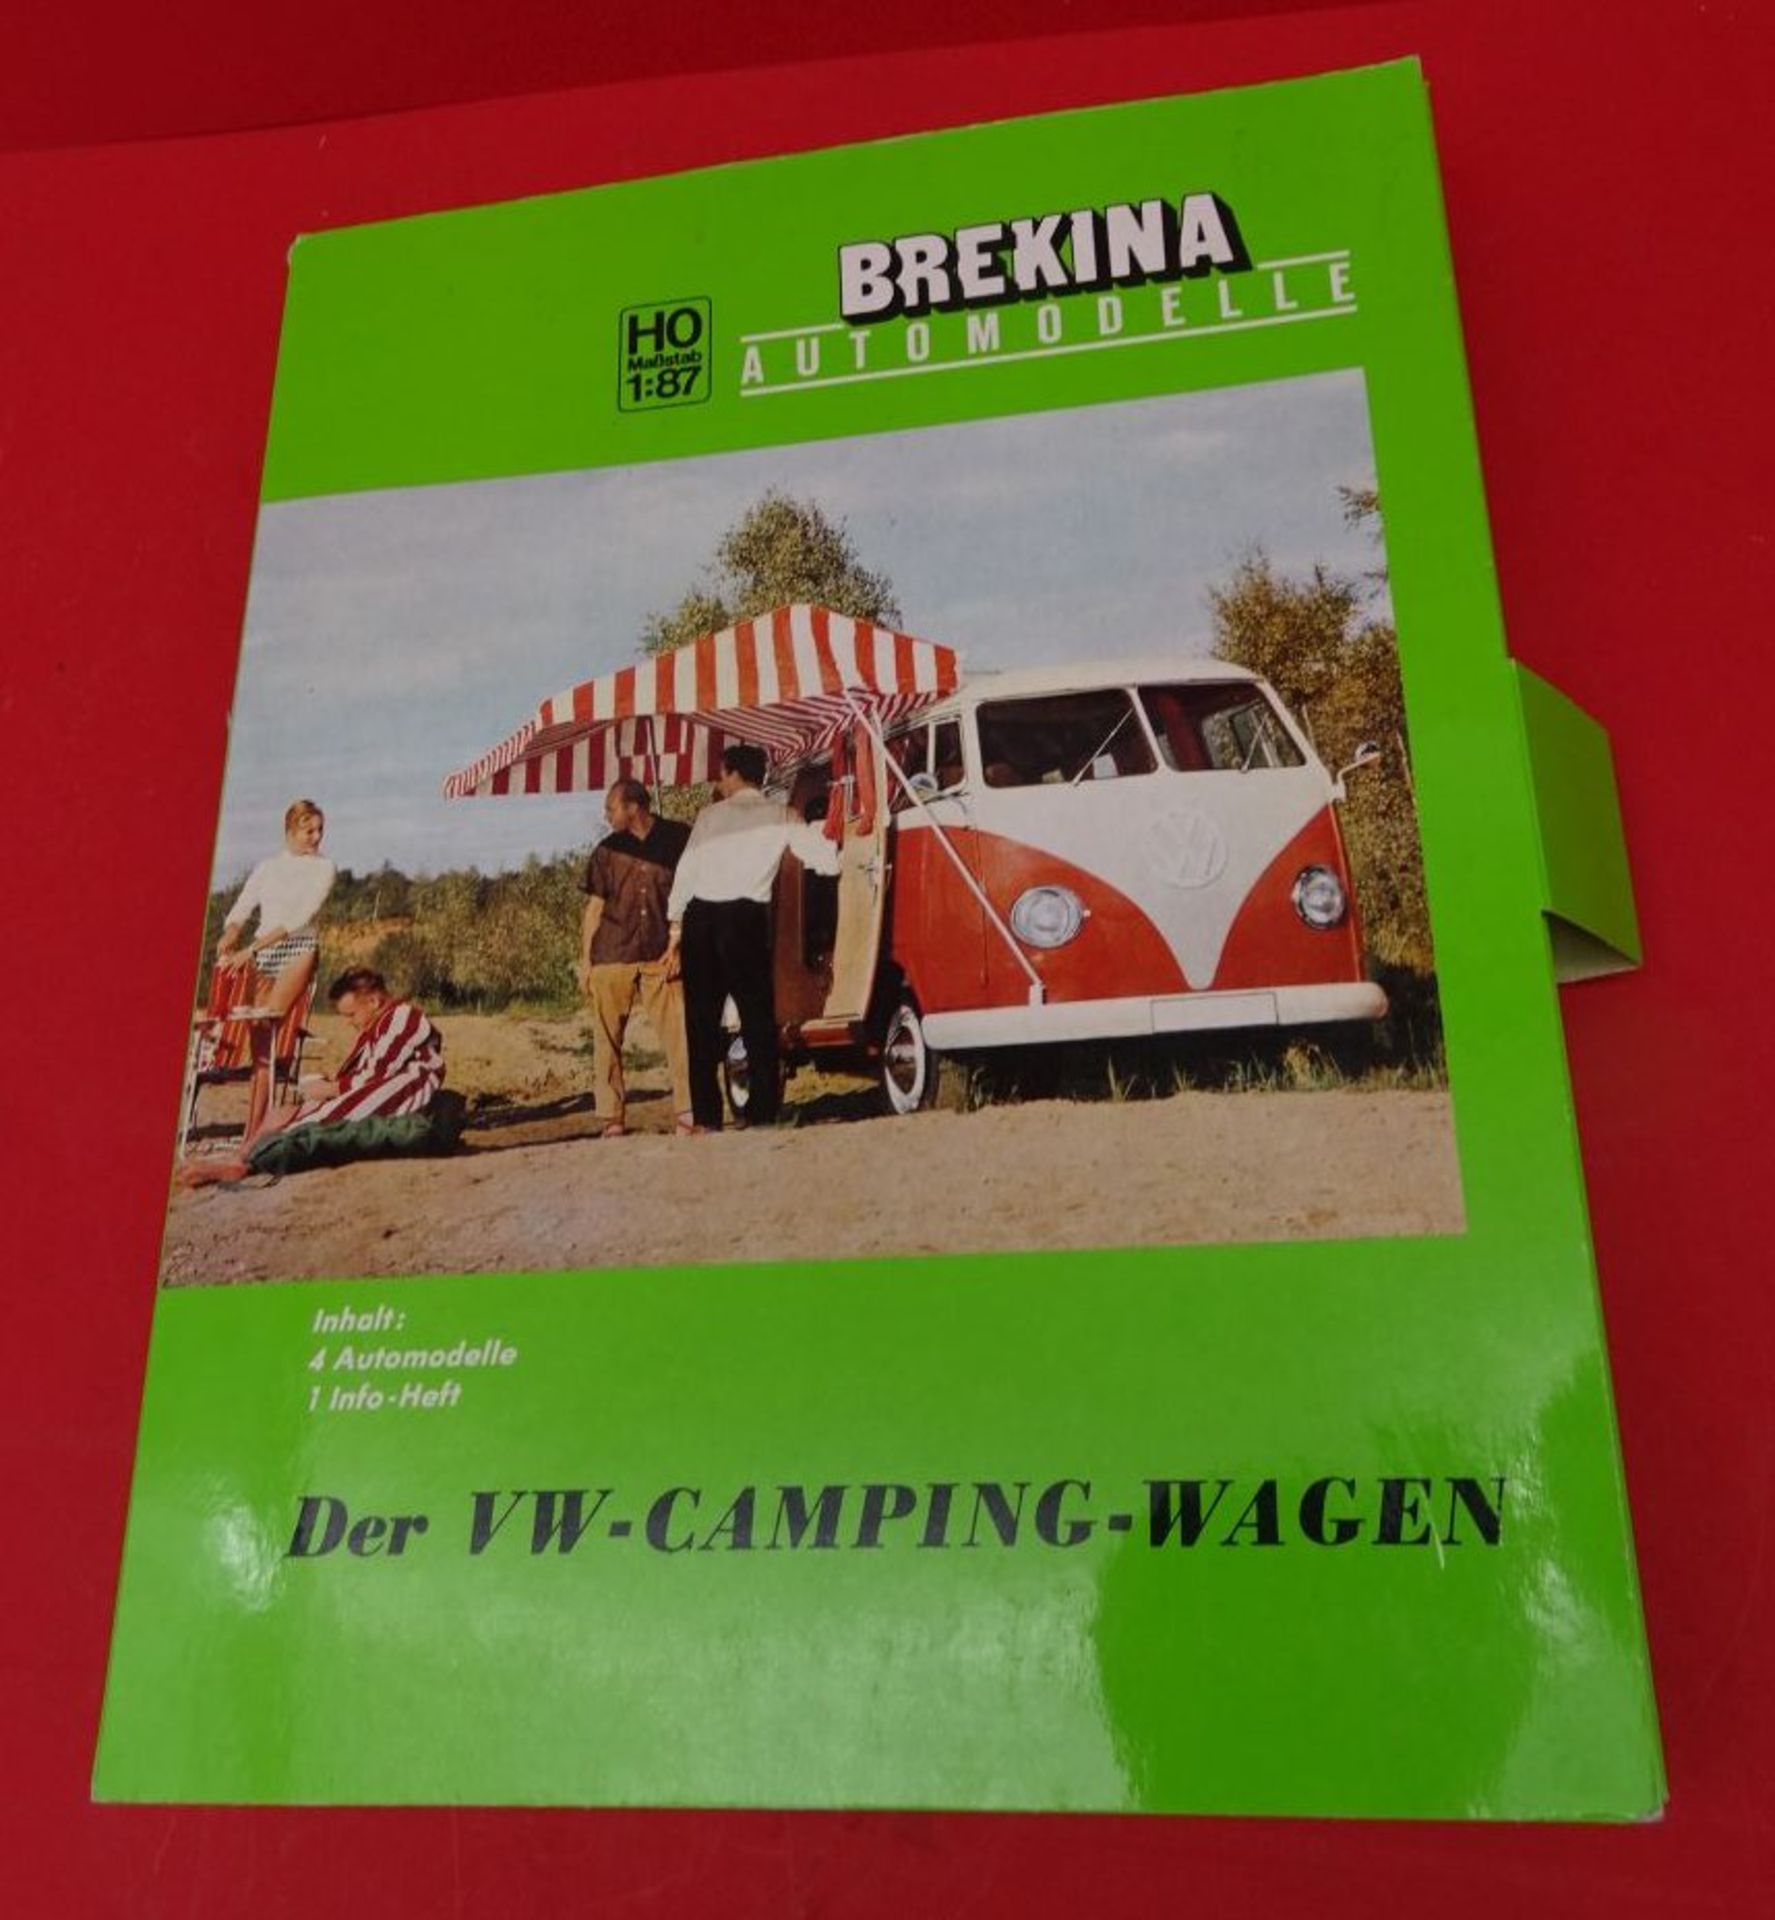 Brekina, 4 VW Campingbusse von Westfalia, ineu n Display, 1:87, H0 - Image 2 of 2